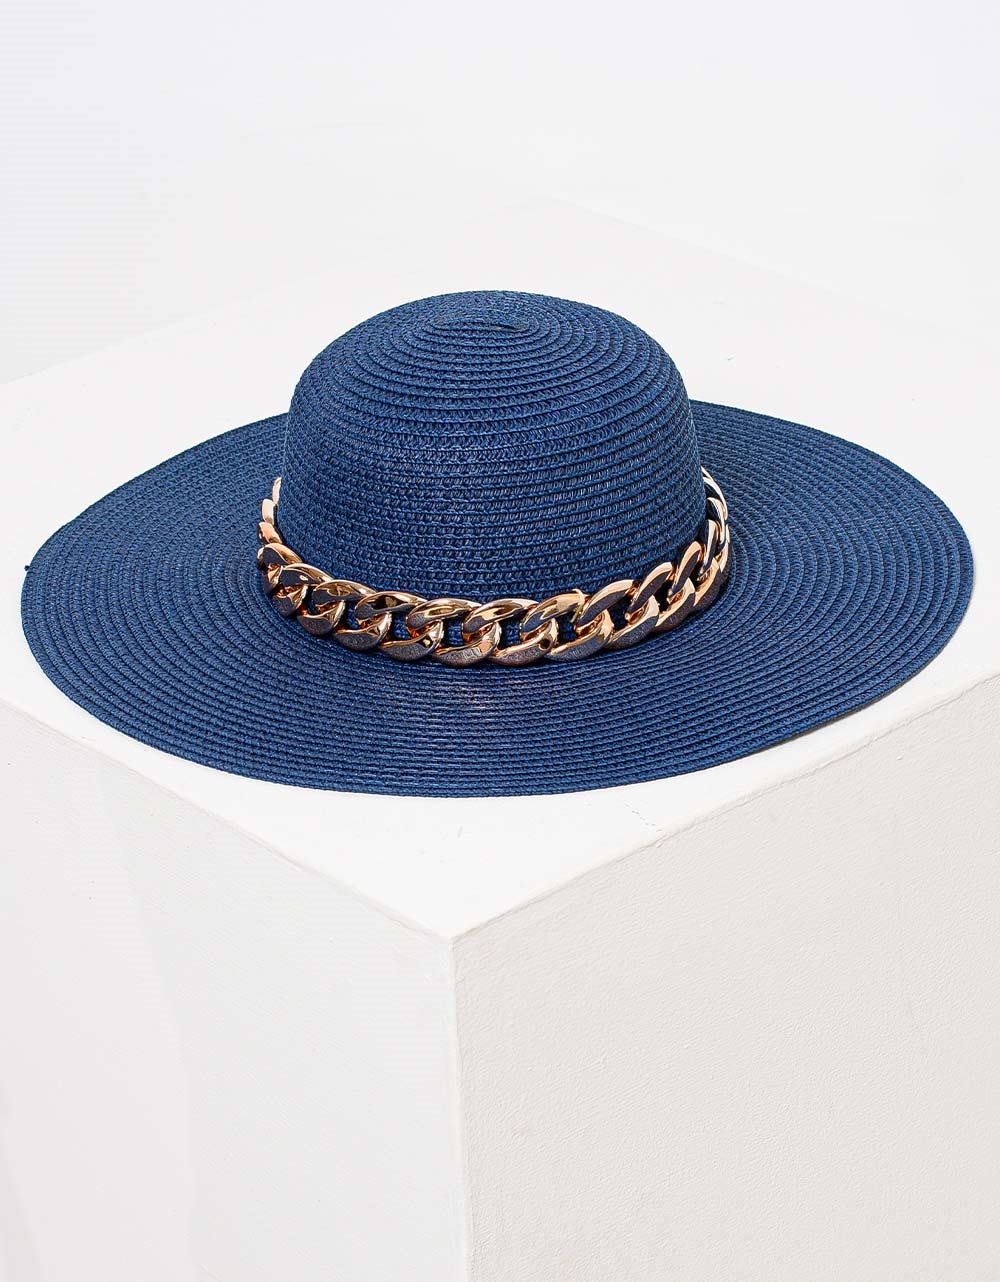 Εικόνα από Γυναικεία καπέλα με χρυσή αλυσίδα περιμετρικά Μπλε